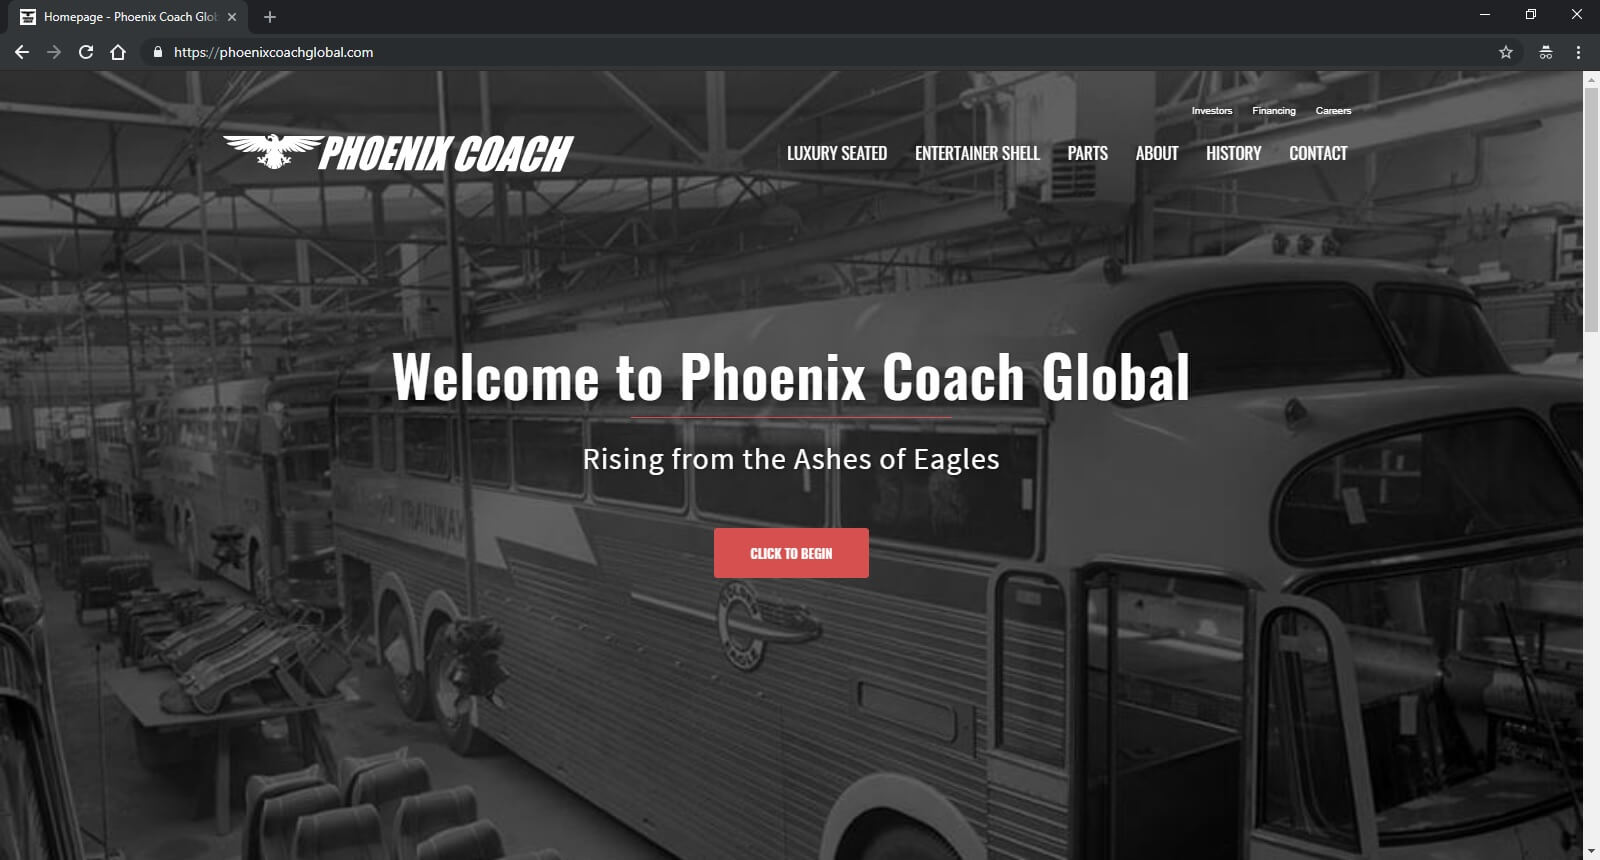 Phoenix Coach Launches the Website